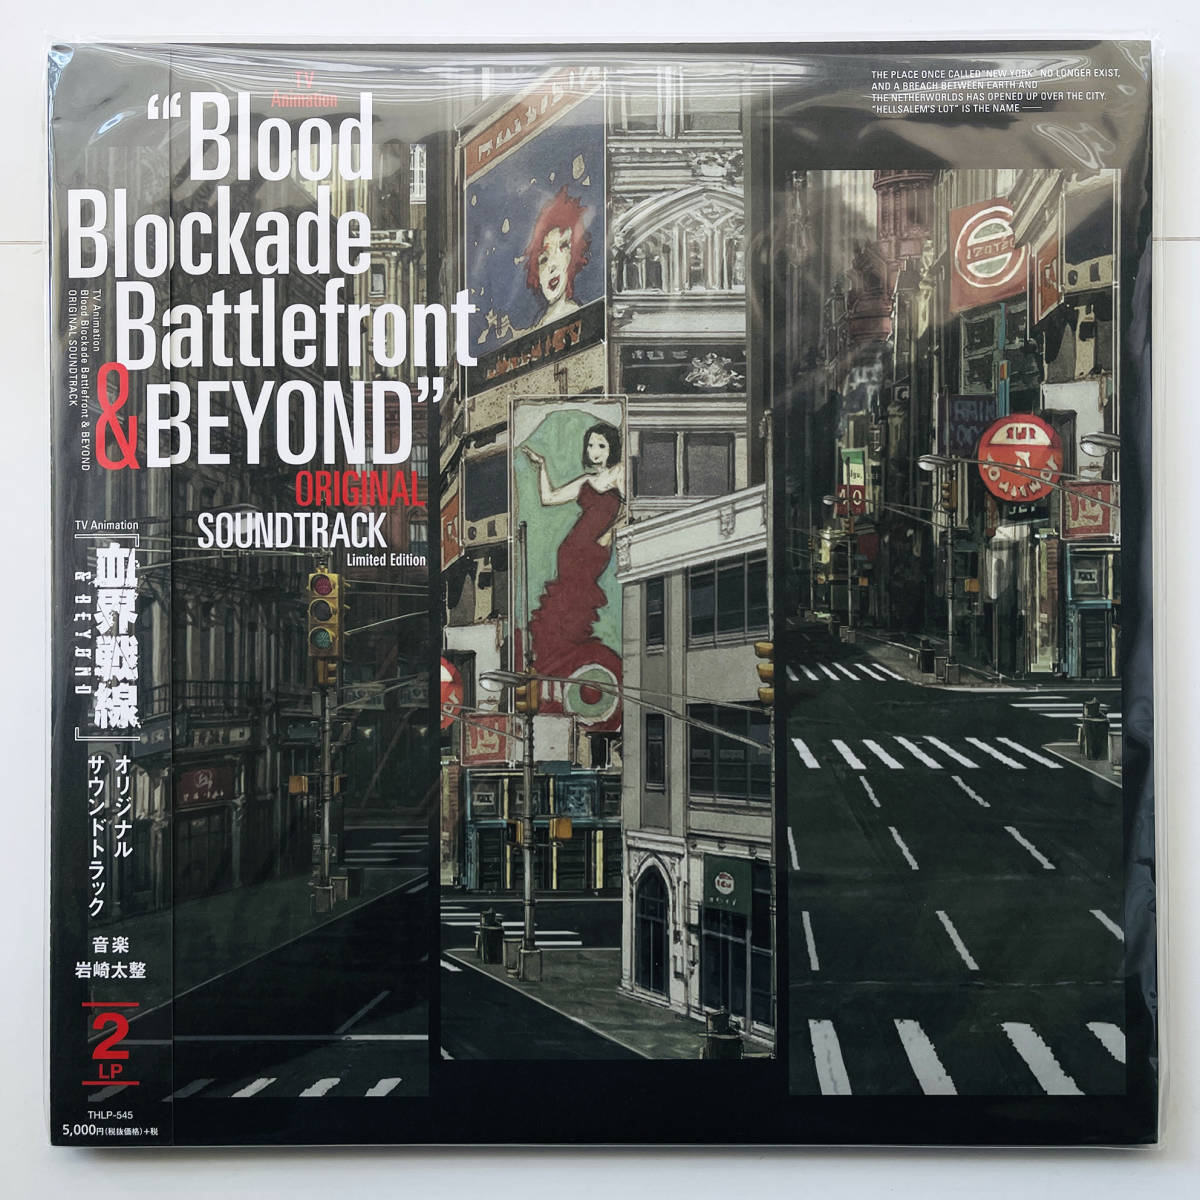  ценный ограничение запись 2LP запись (.. битва линия & Beyond саундтрек Blood Blockade Battlefront ) Schadaraparr Okamura Yasuyuki скала мыс futoshi целый 